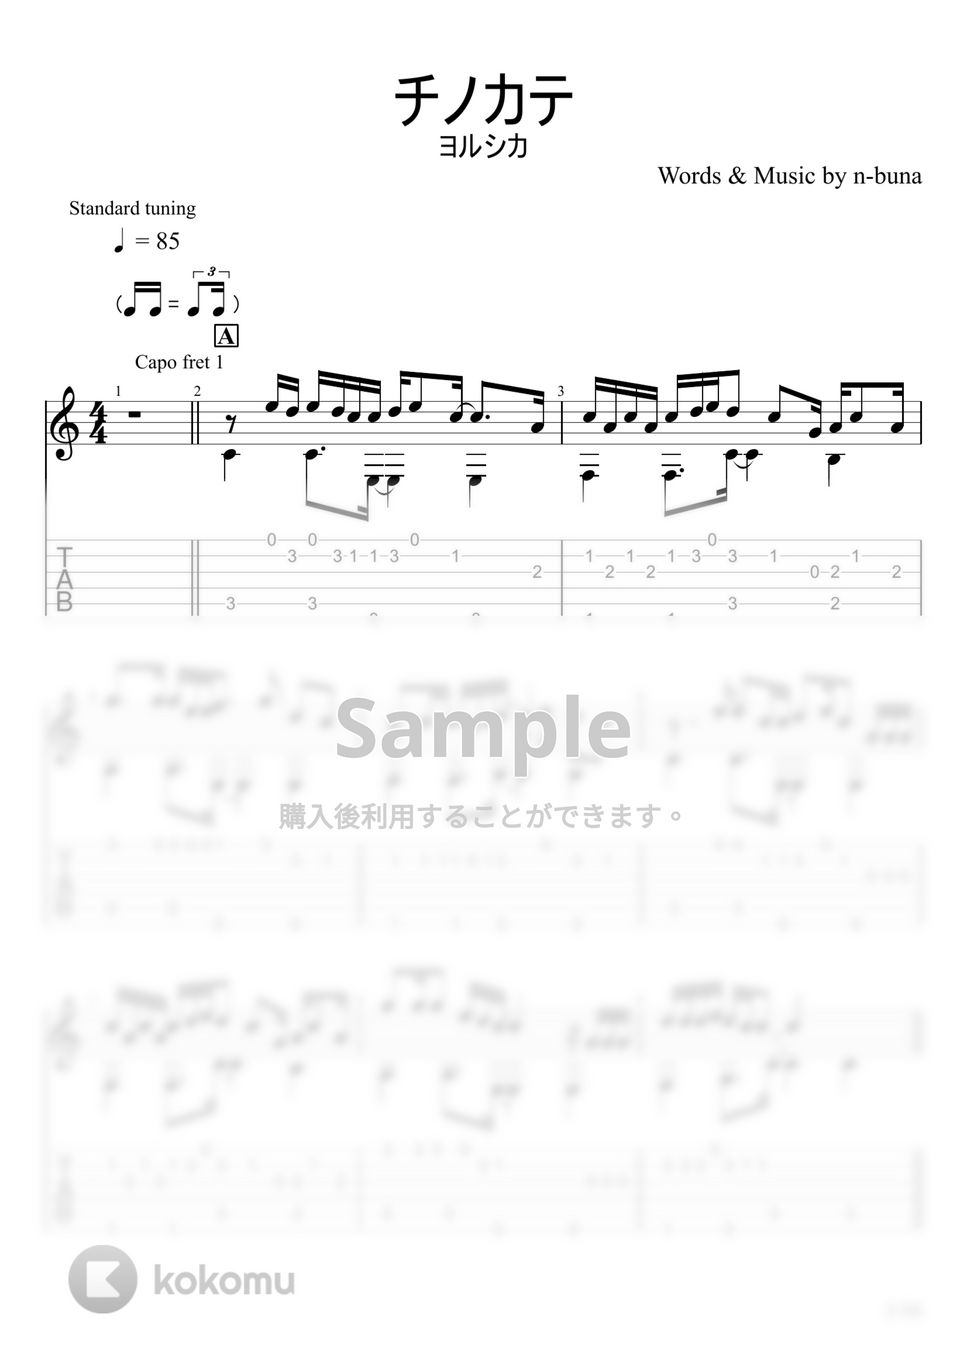 ヨルシカ - チノカテ (ソロギター) by u3danchou